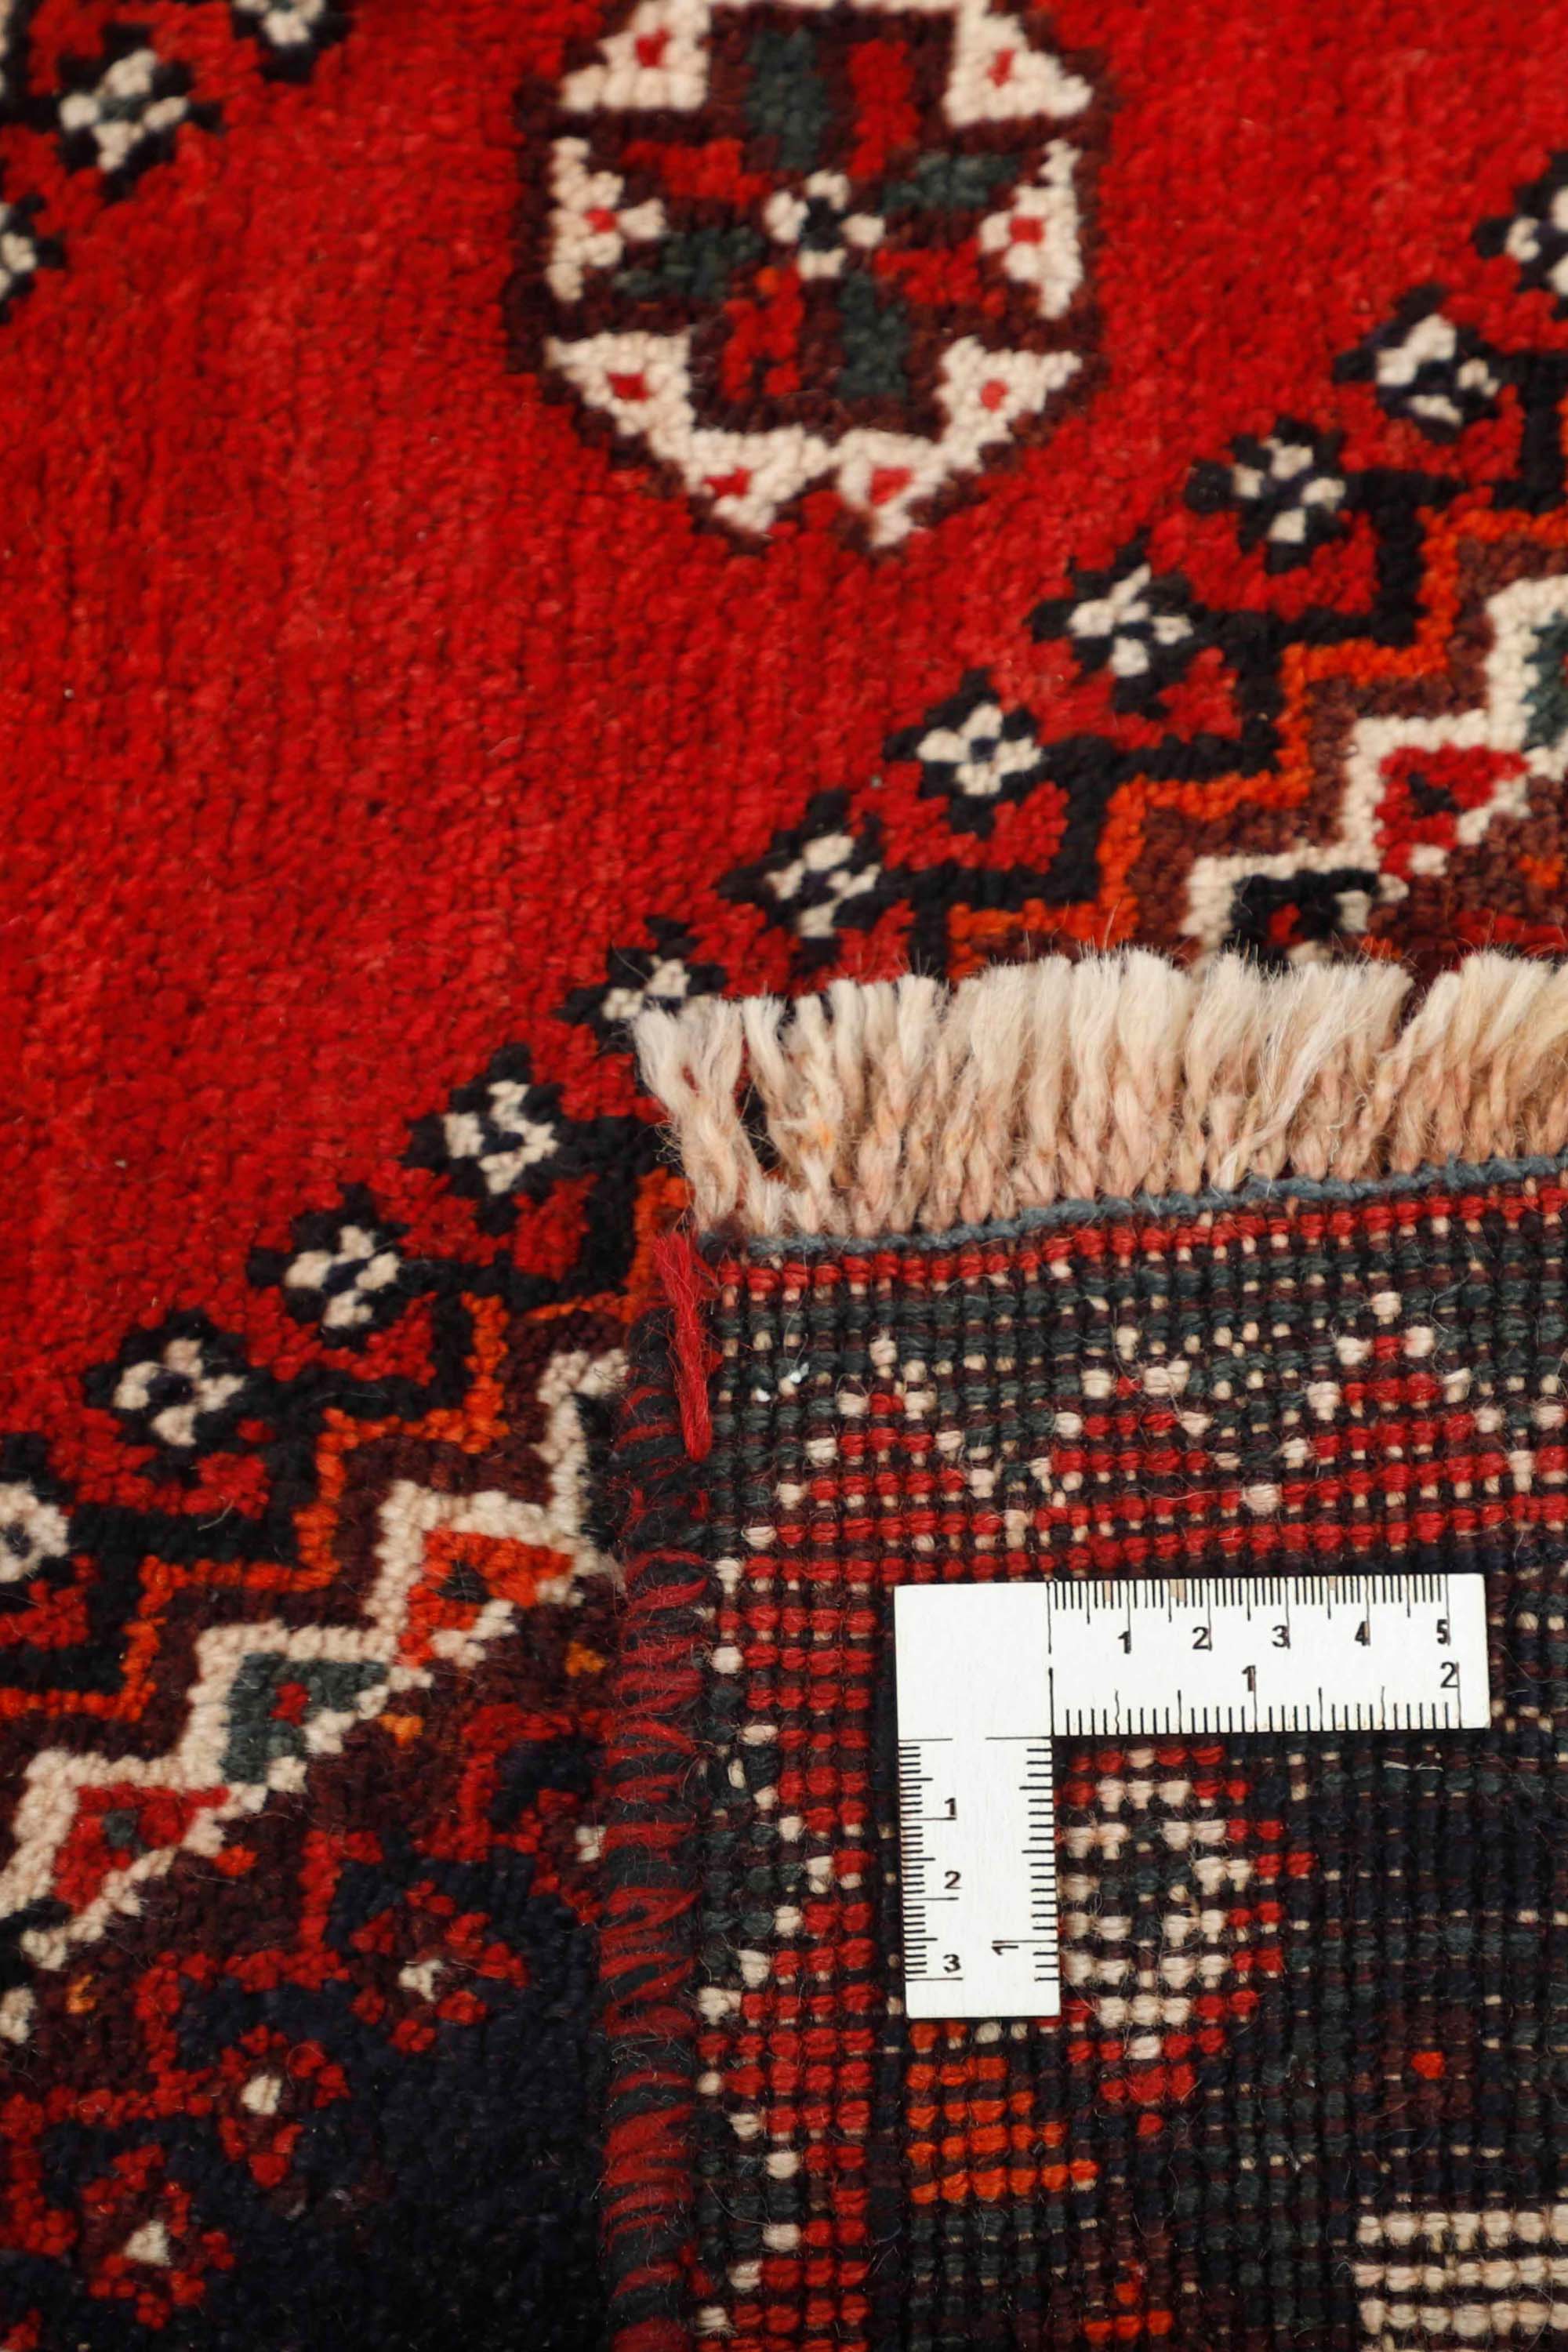 Traditional bordered Shiraz rug